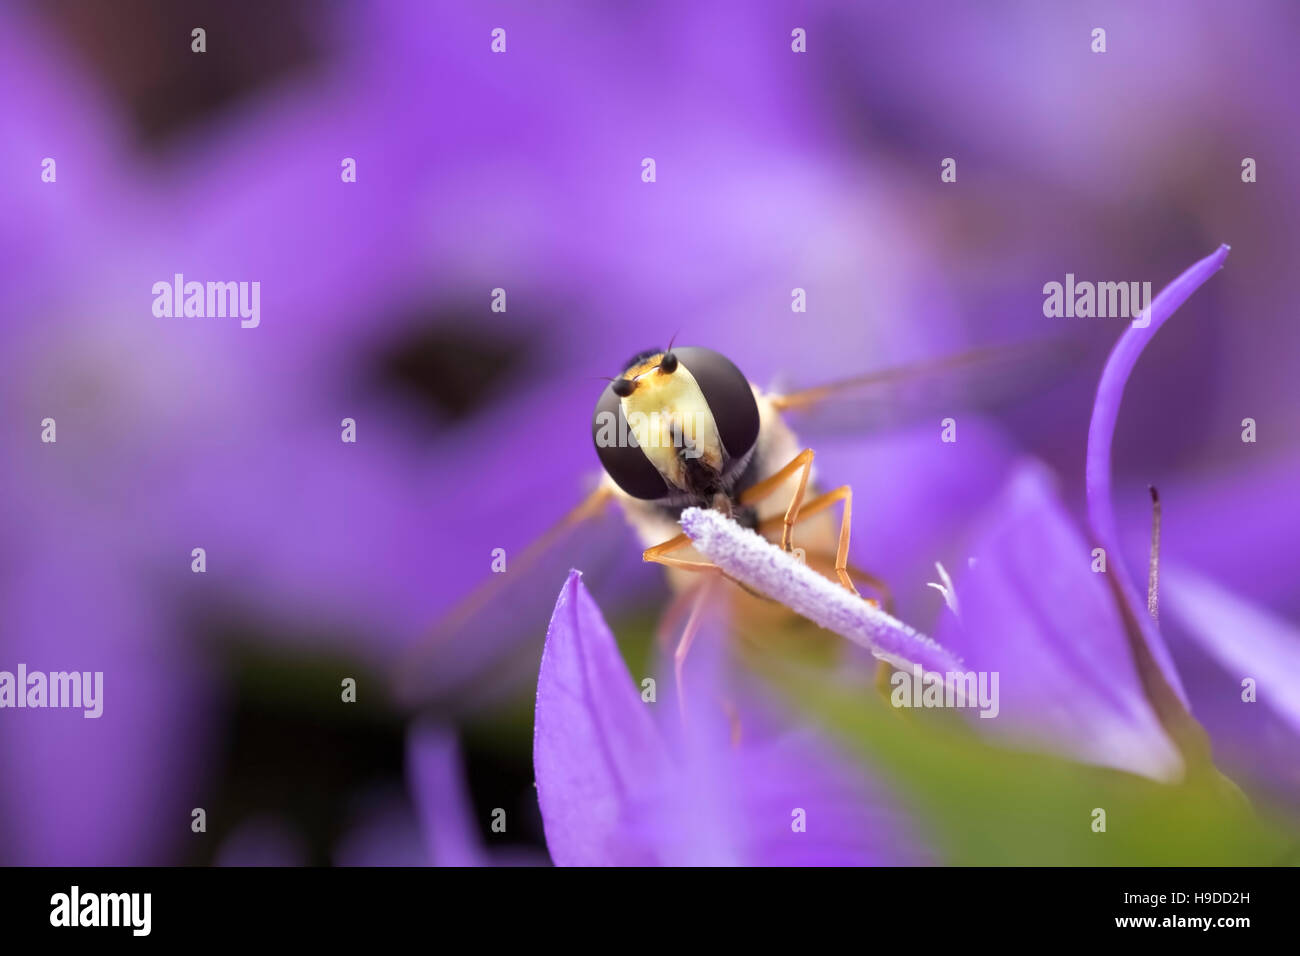 Hoverfly Episyrphus balteatus marmelade nectar d'alimentation sur une fleur pourpre. La marmelade hoverfly peut être trouvé tout au long de l'année dans les jardins urbains, v Banque D'Images